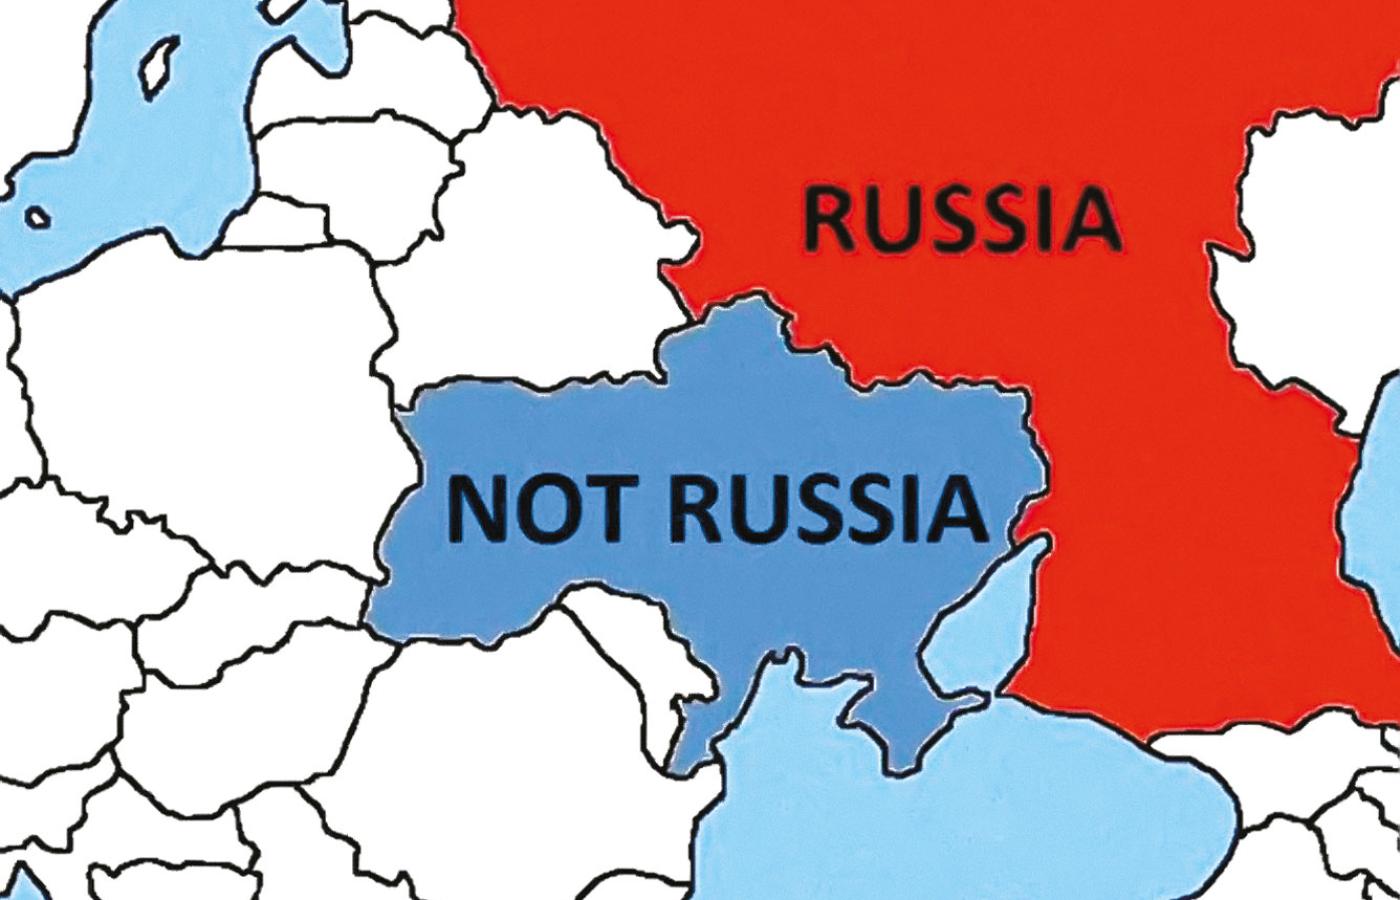 Twitterowa mapa, która jako pomoc dla rosyjskich żołnierzy pokazywała, gdzie jest Rosja, a gdzie nie jest.